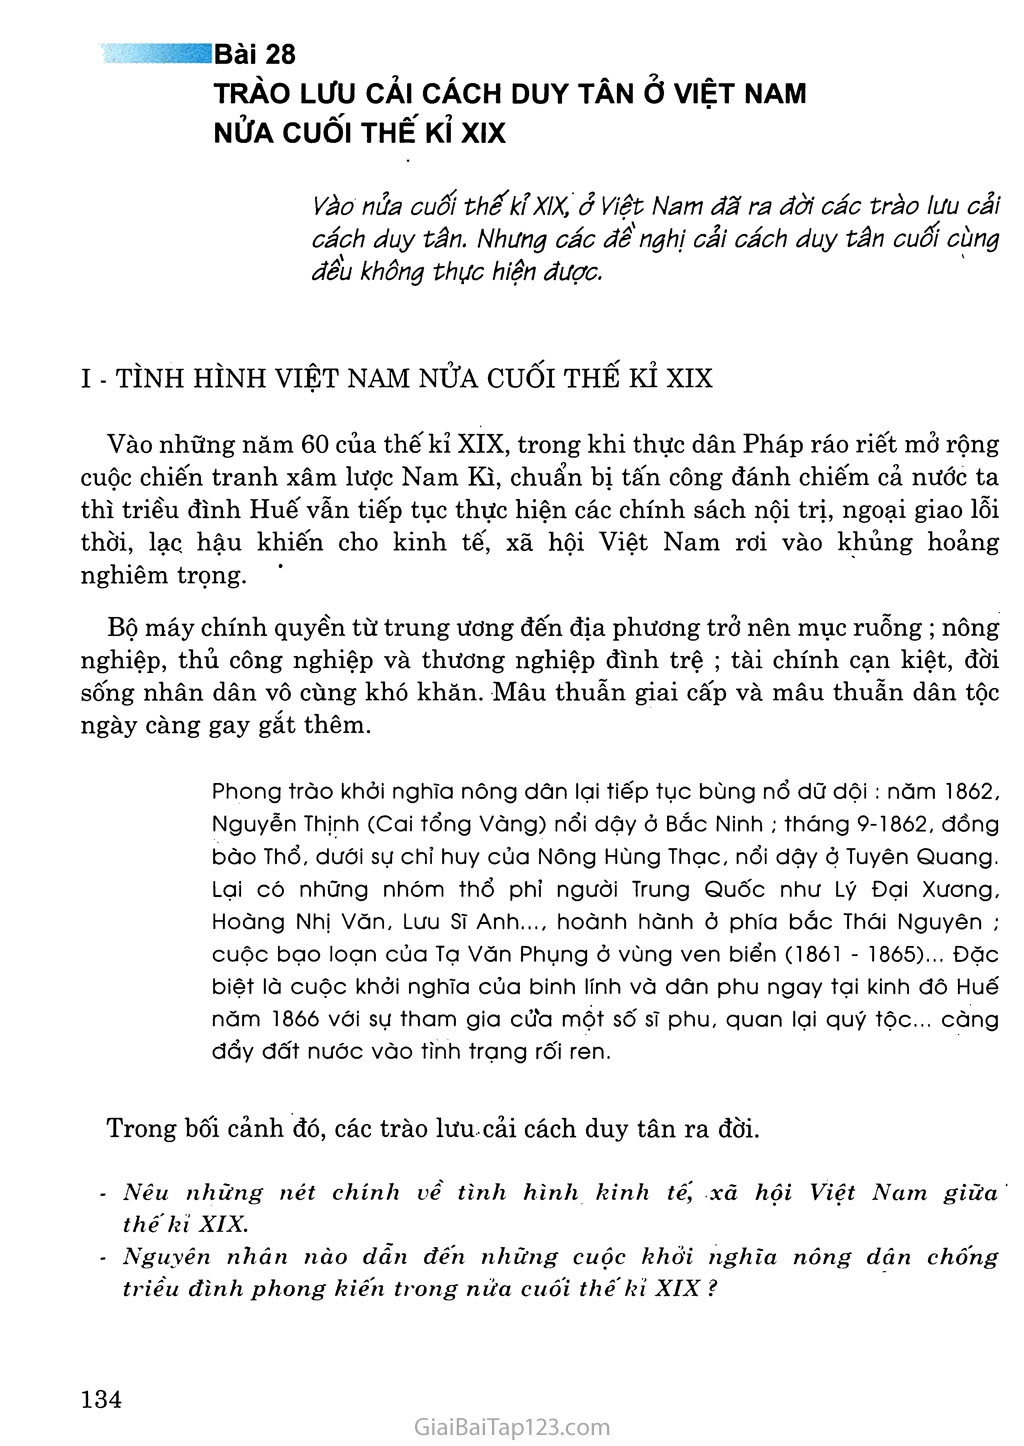 Bài 28: Trào lưu cải cách duy tân ở Việt Nam nửa cuối thế kỉ XIX trang 1